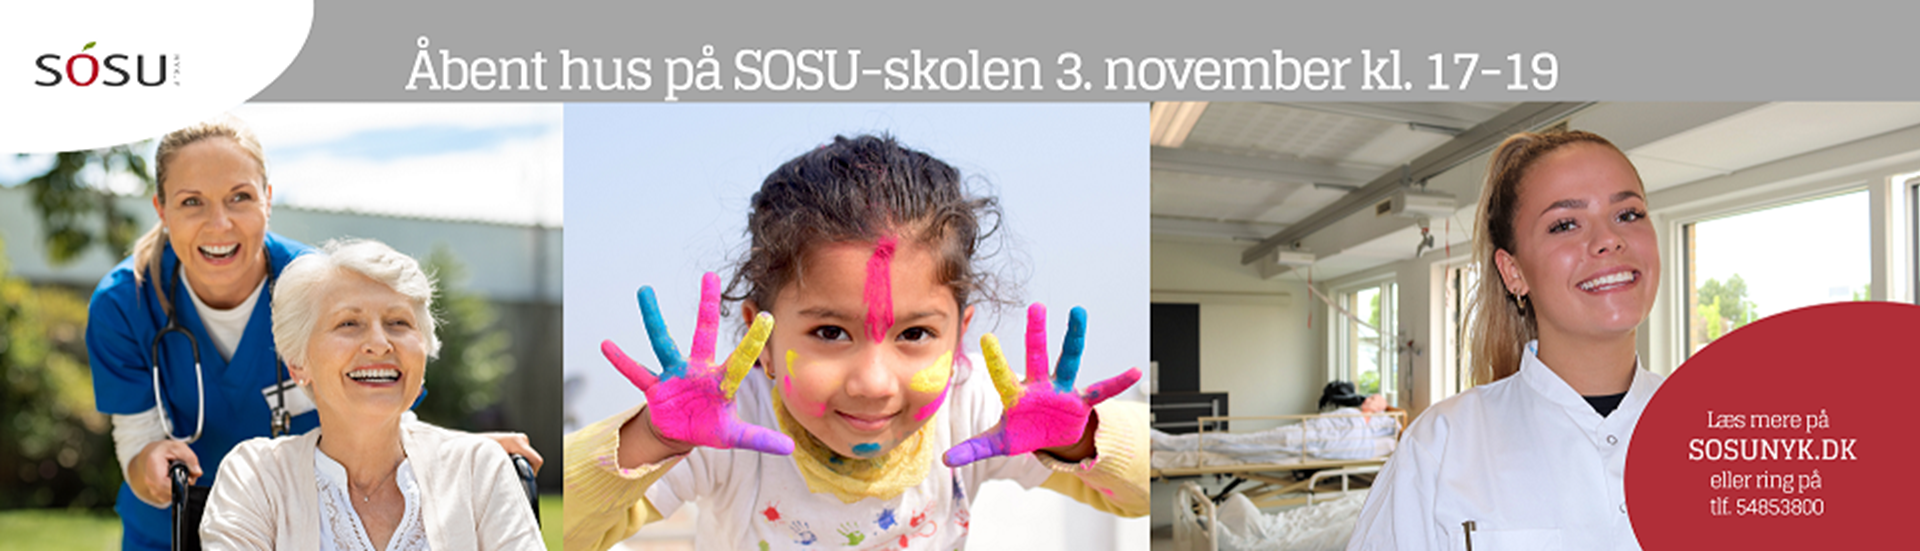 Reklame for åbent hus på SOSU-skolen 3. november 2022 kl. 17-19.